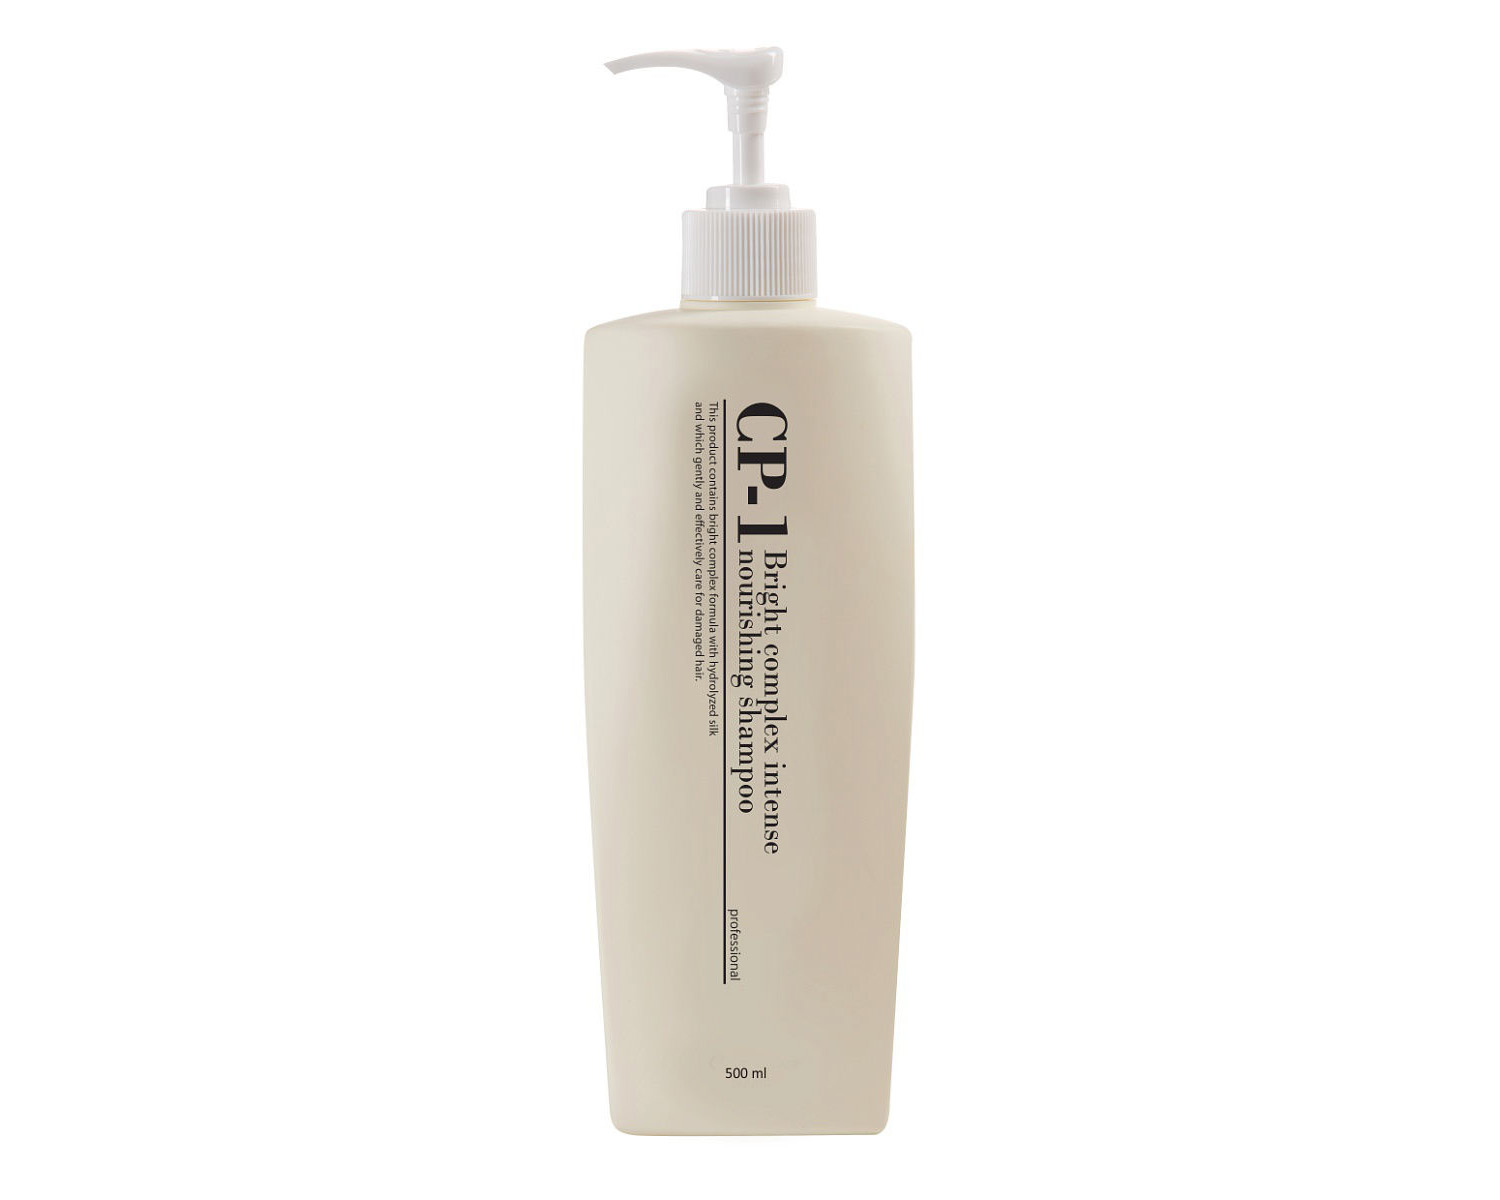 Корейский протеиновый шампунь для волос ESTHETIC HOUSE СР-1 BC Intense Nourishing Shampoo 500 мл. КУПИТЬ КОРЕЙСКИЙ ШАМПУНЬ